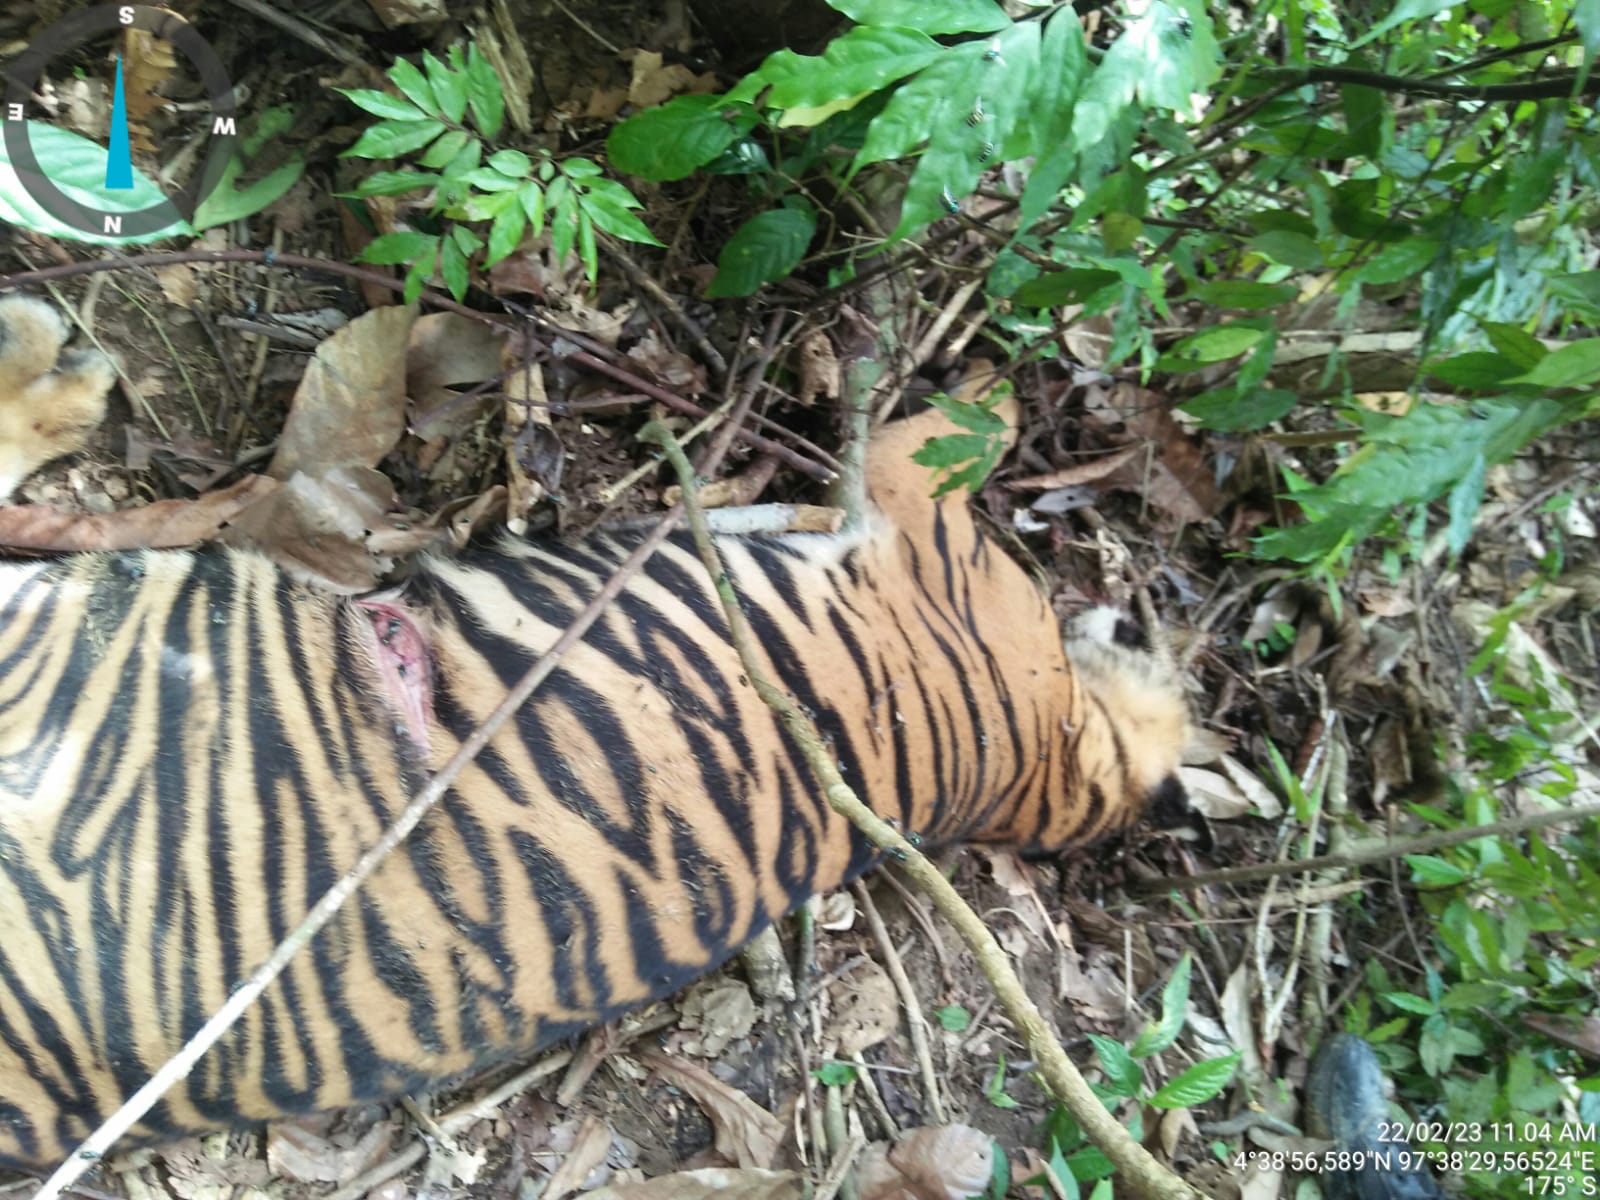 Polres Aceh Timur Selidiki Kematian Anak Harimau di Peunaron